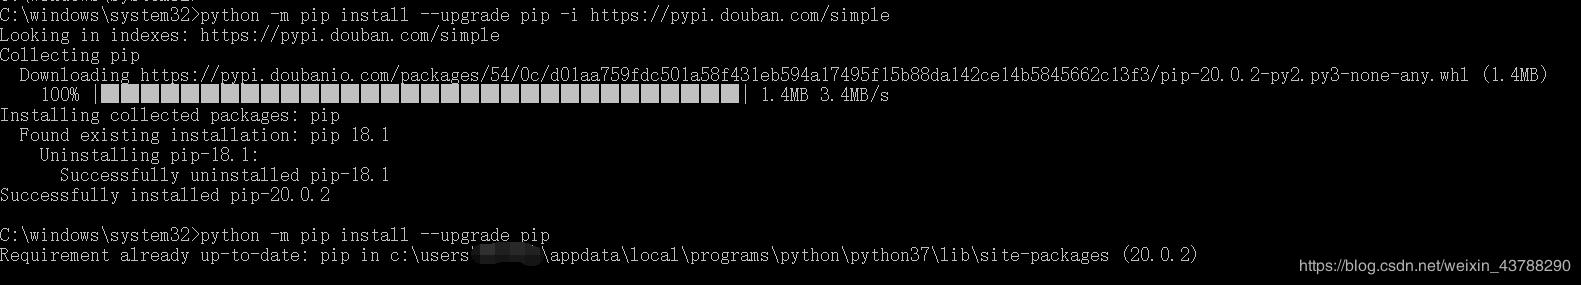 如何解决python -m pip install --upgrade pip升级不成功的问题